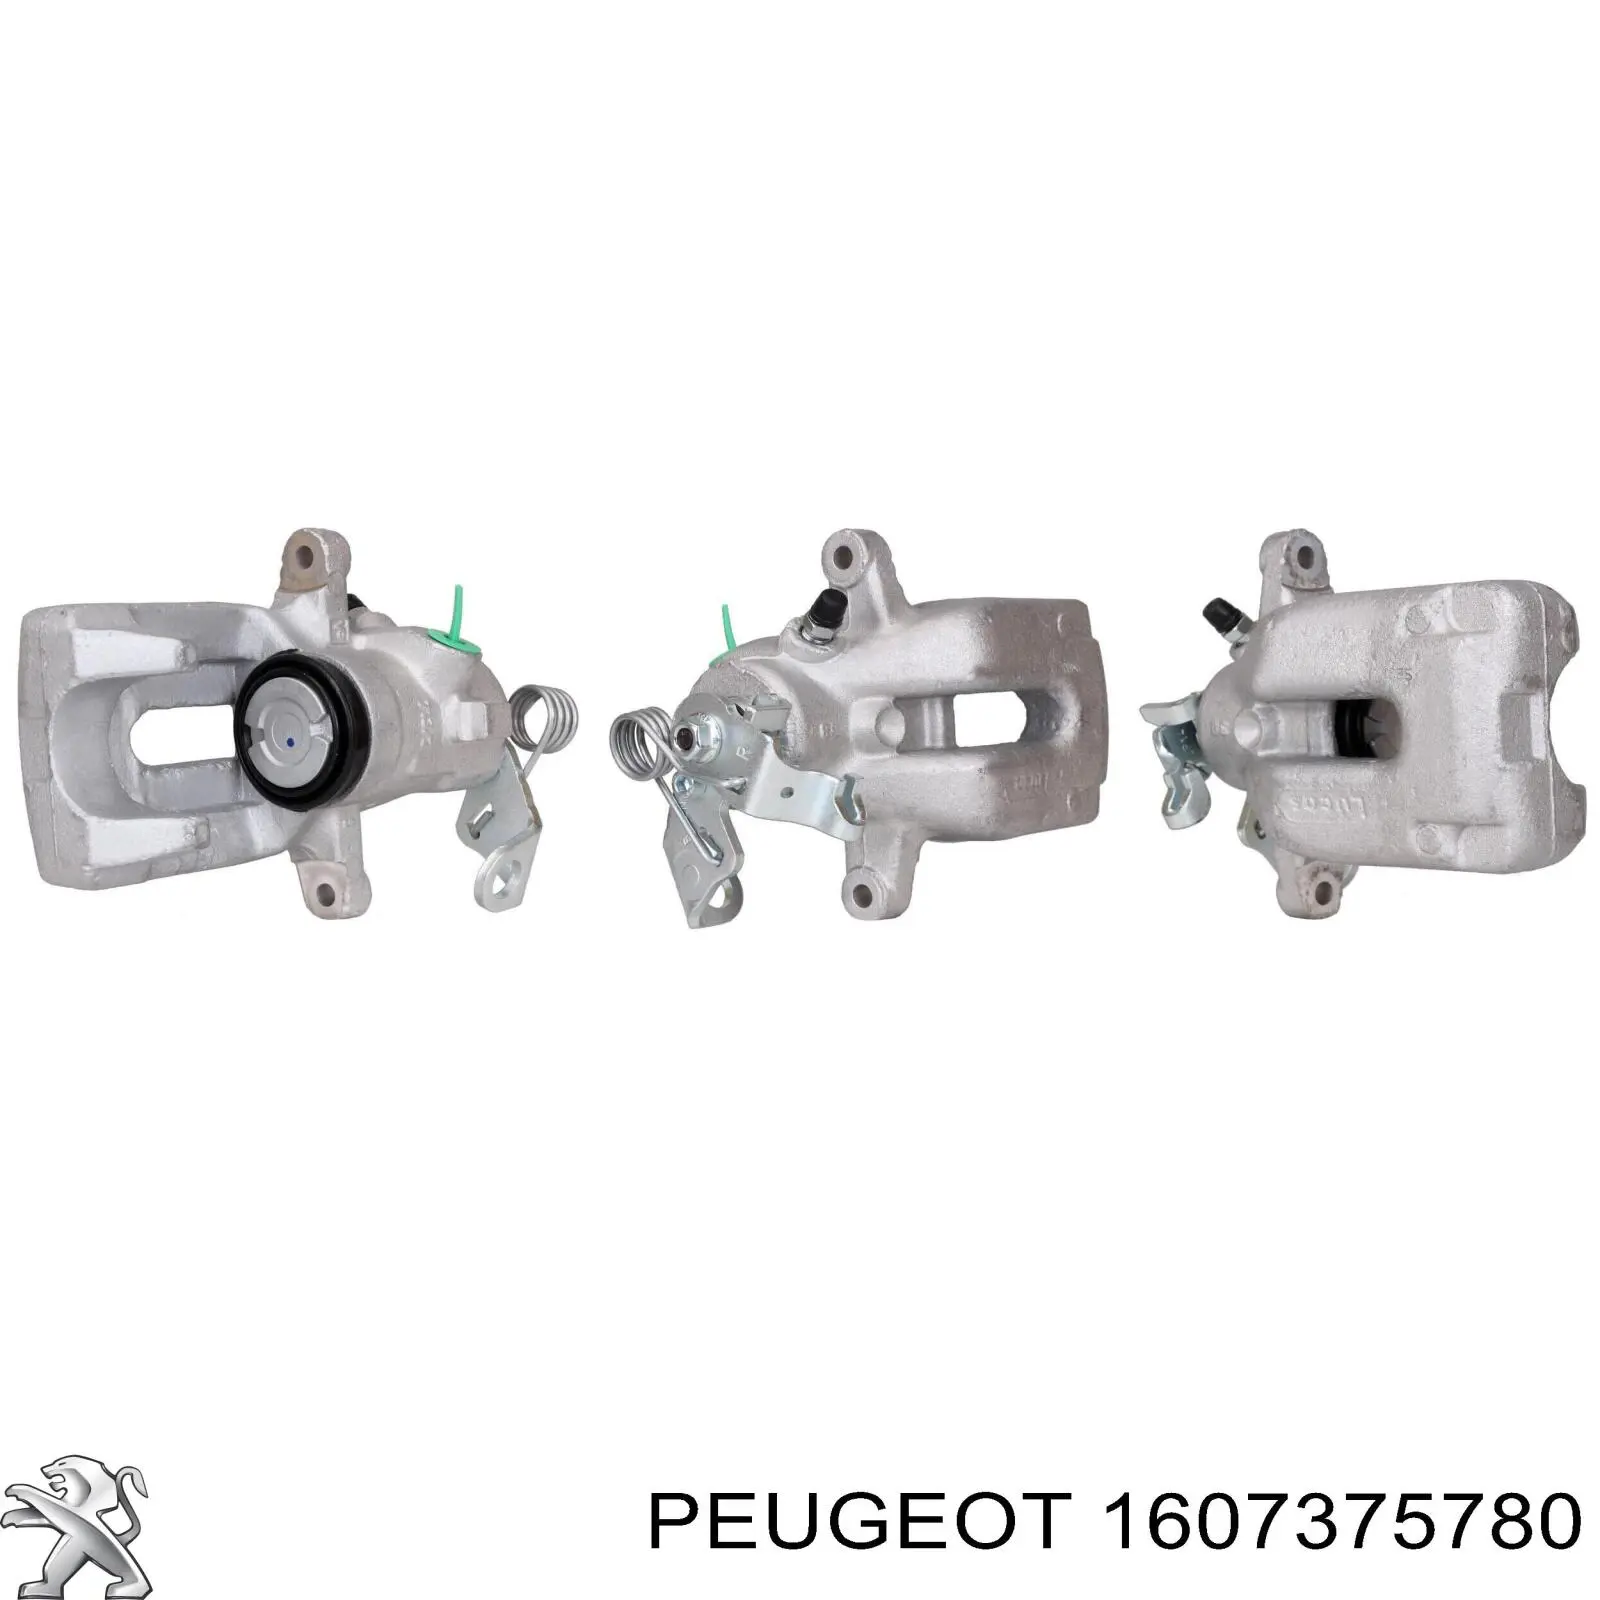 1607375780 Peugeot/Citroen суппорт тормозной задний правый